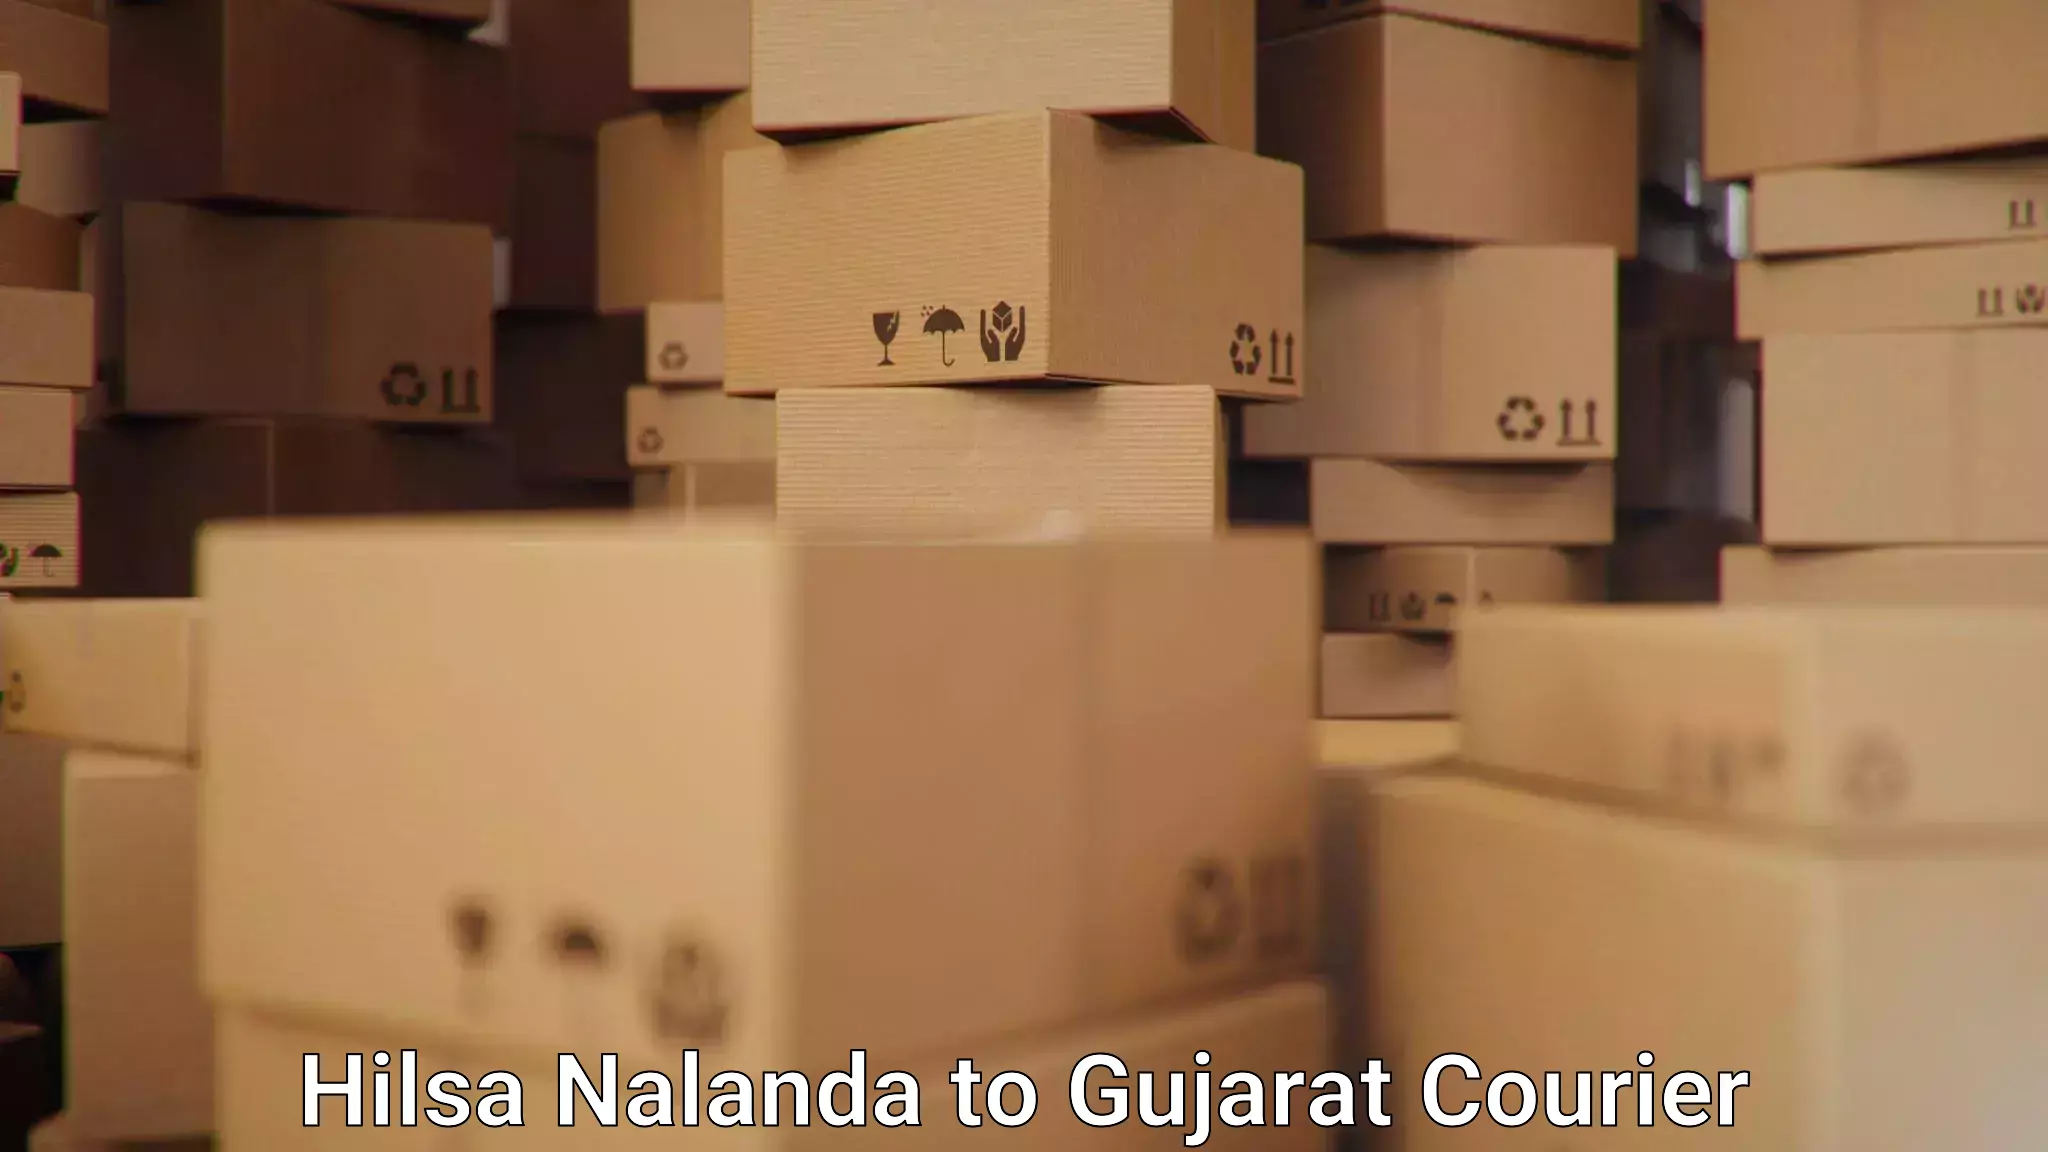 Holiday shipping services Hilsa Nalanda to Nasvadi